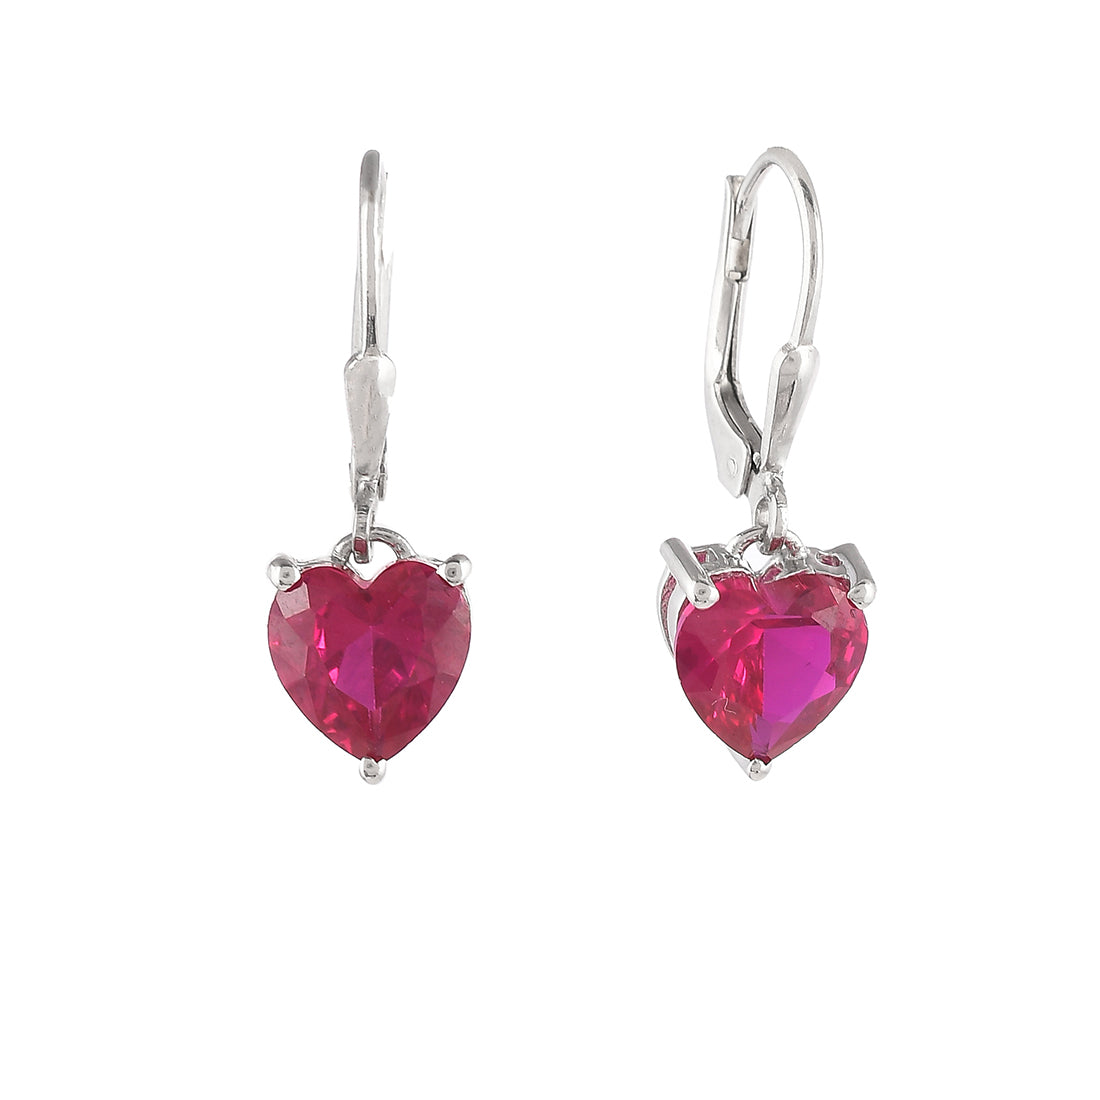 Women's Red Heart Cz Huggie Earrings - Voylla